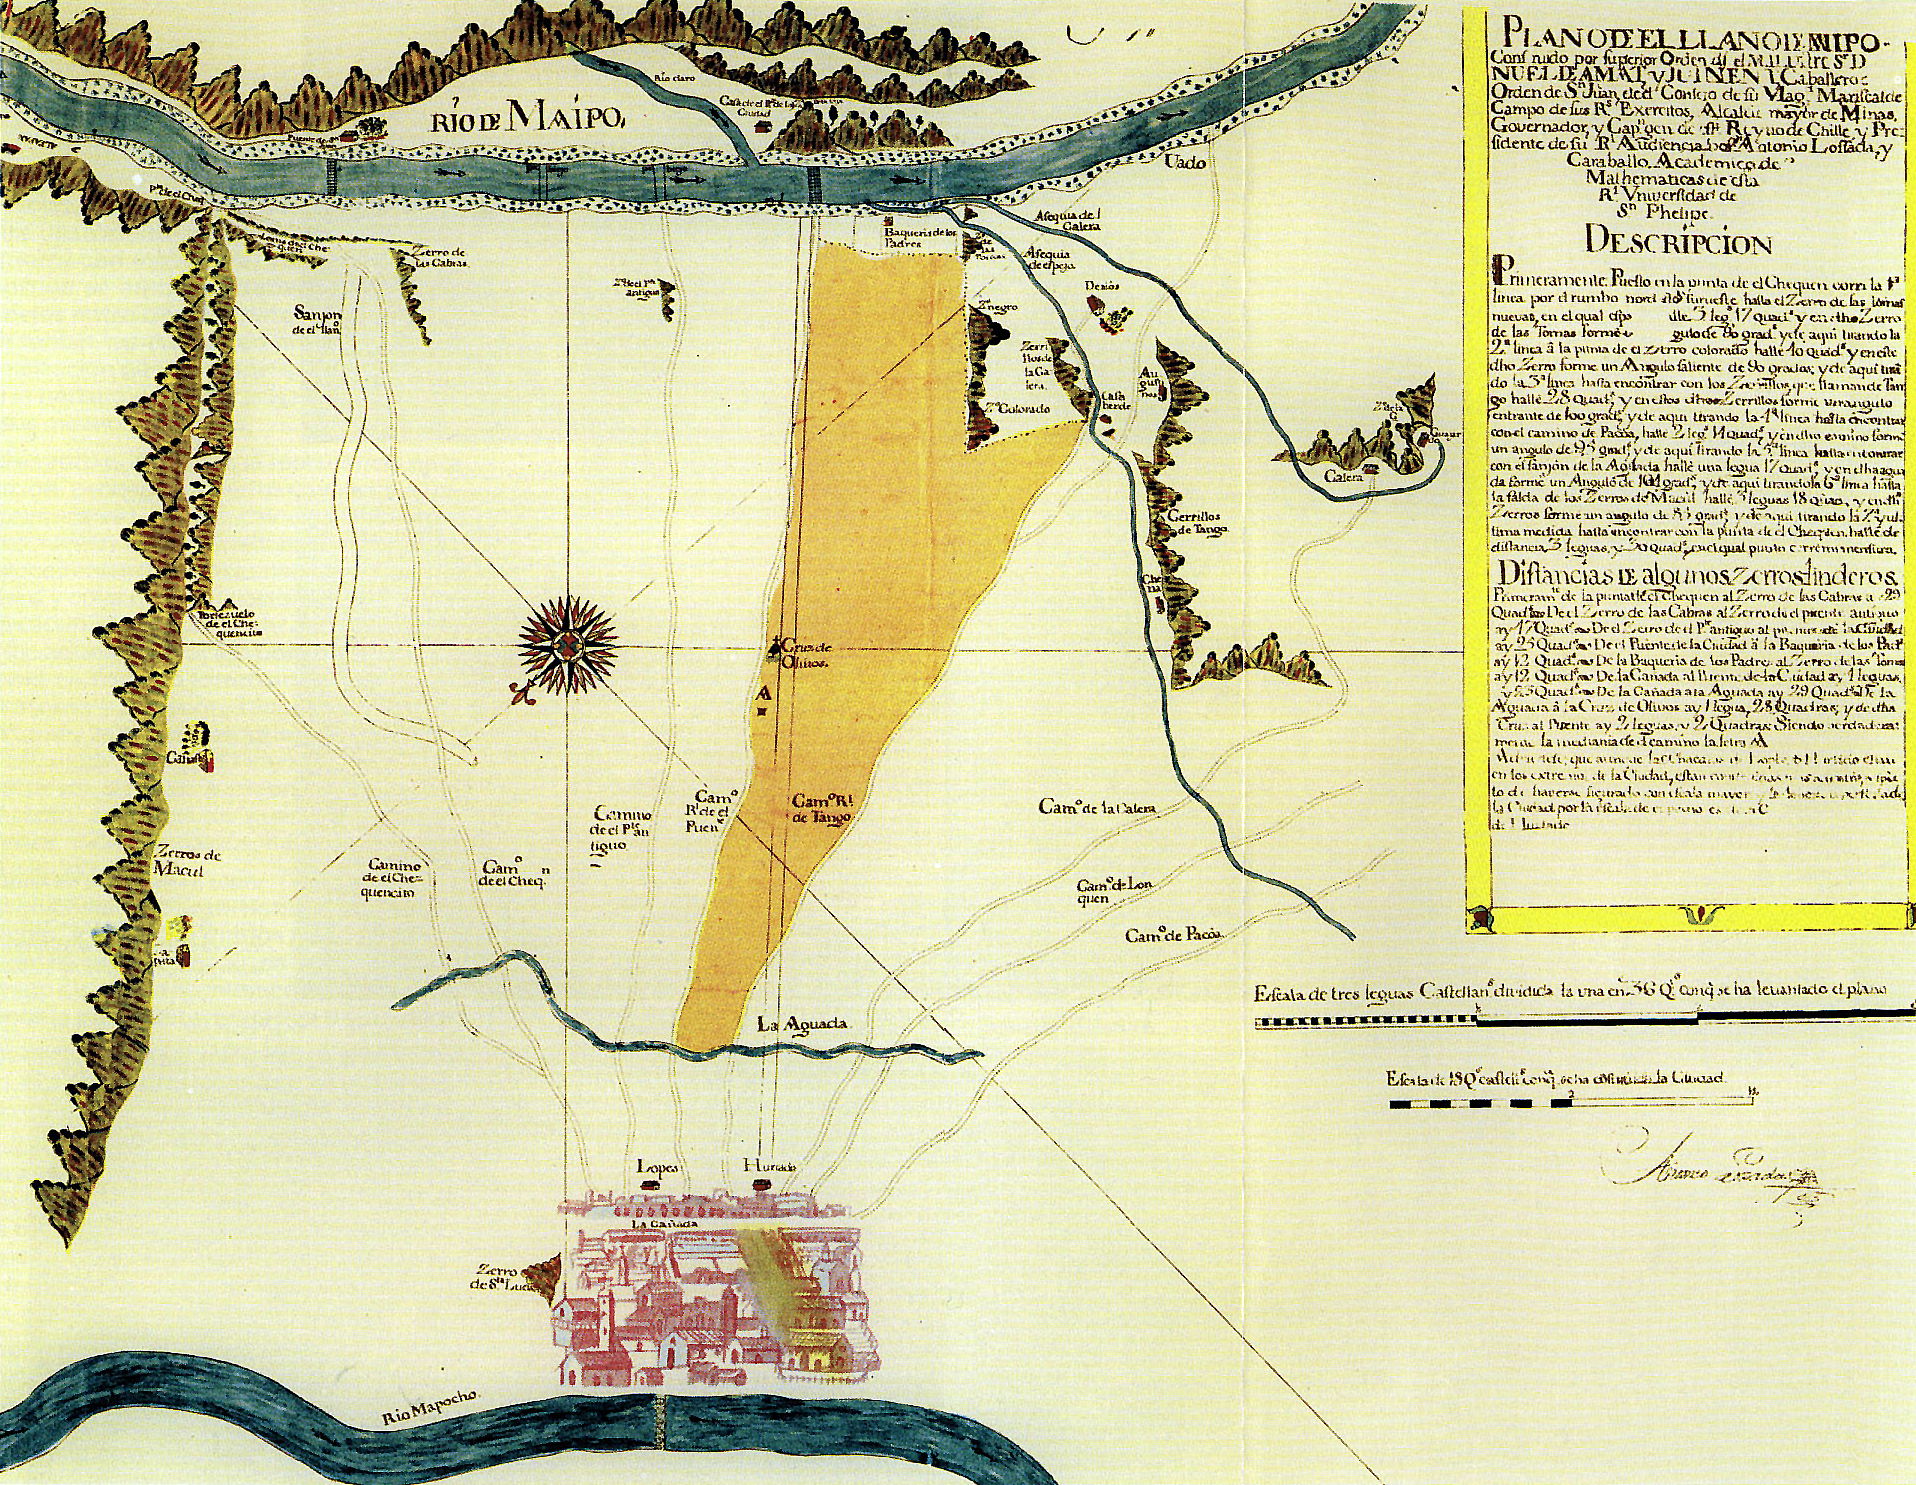 1755 Plano del Llano del Maipo